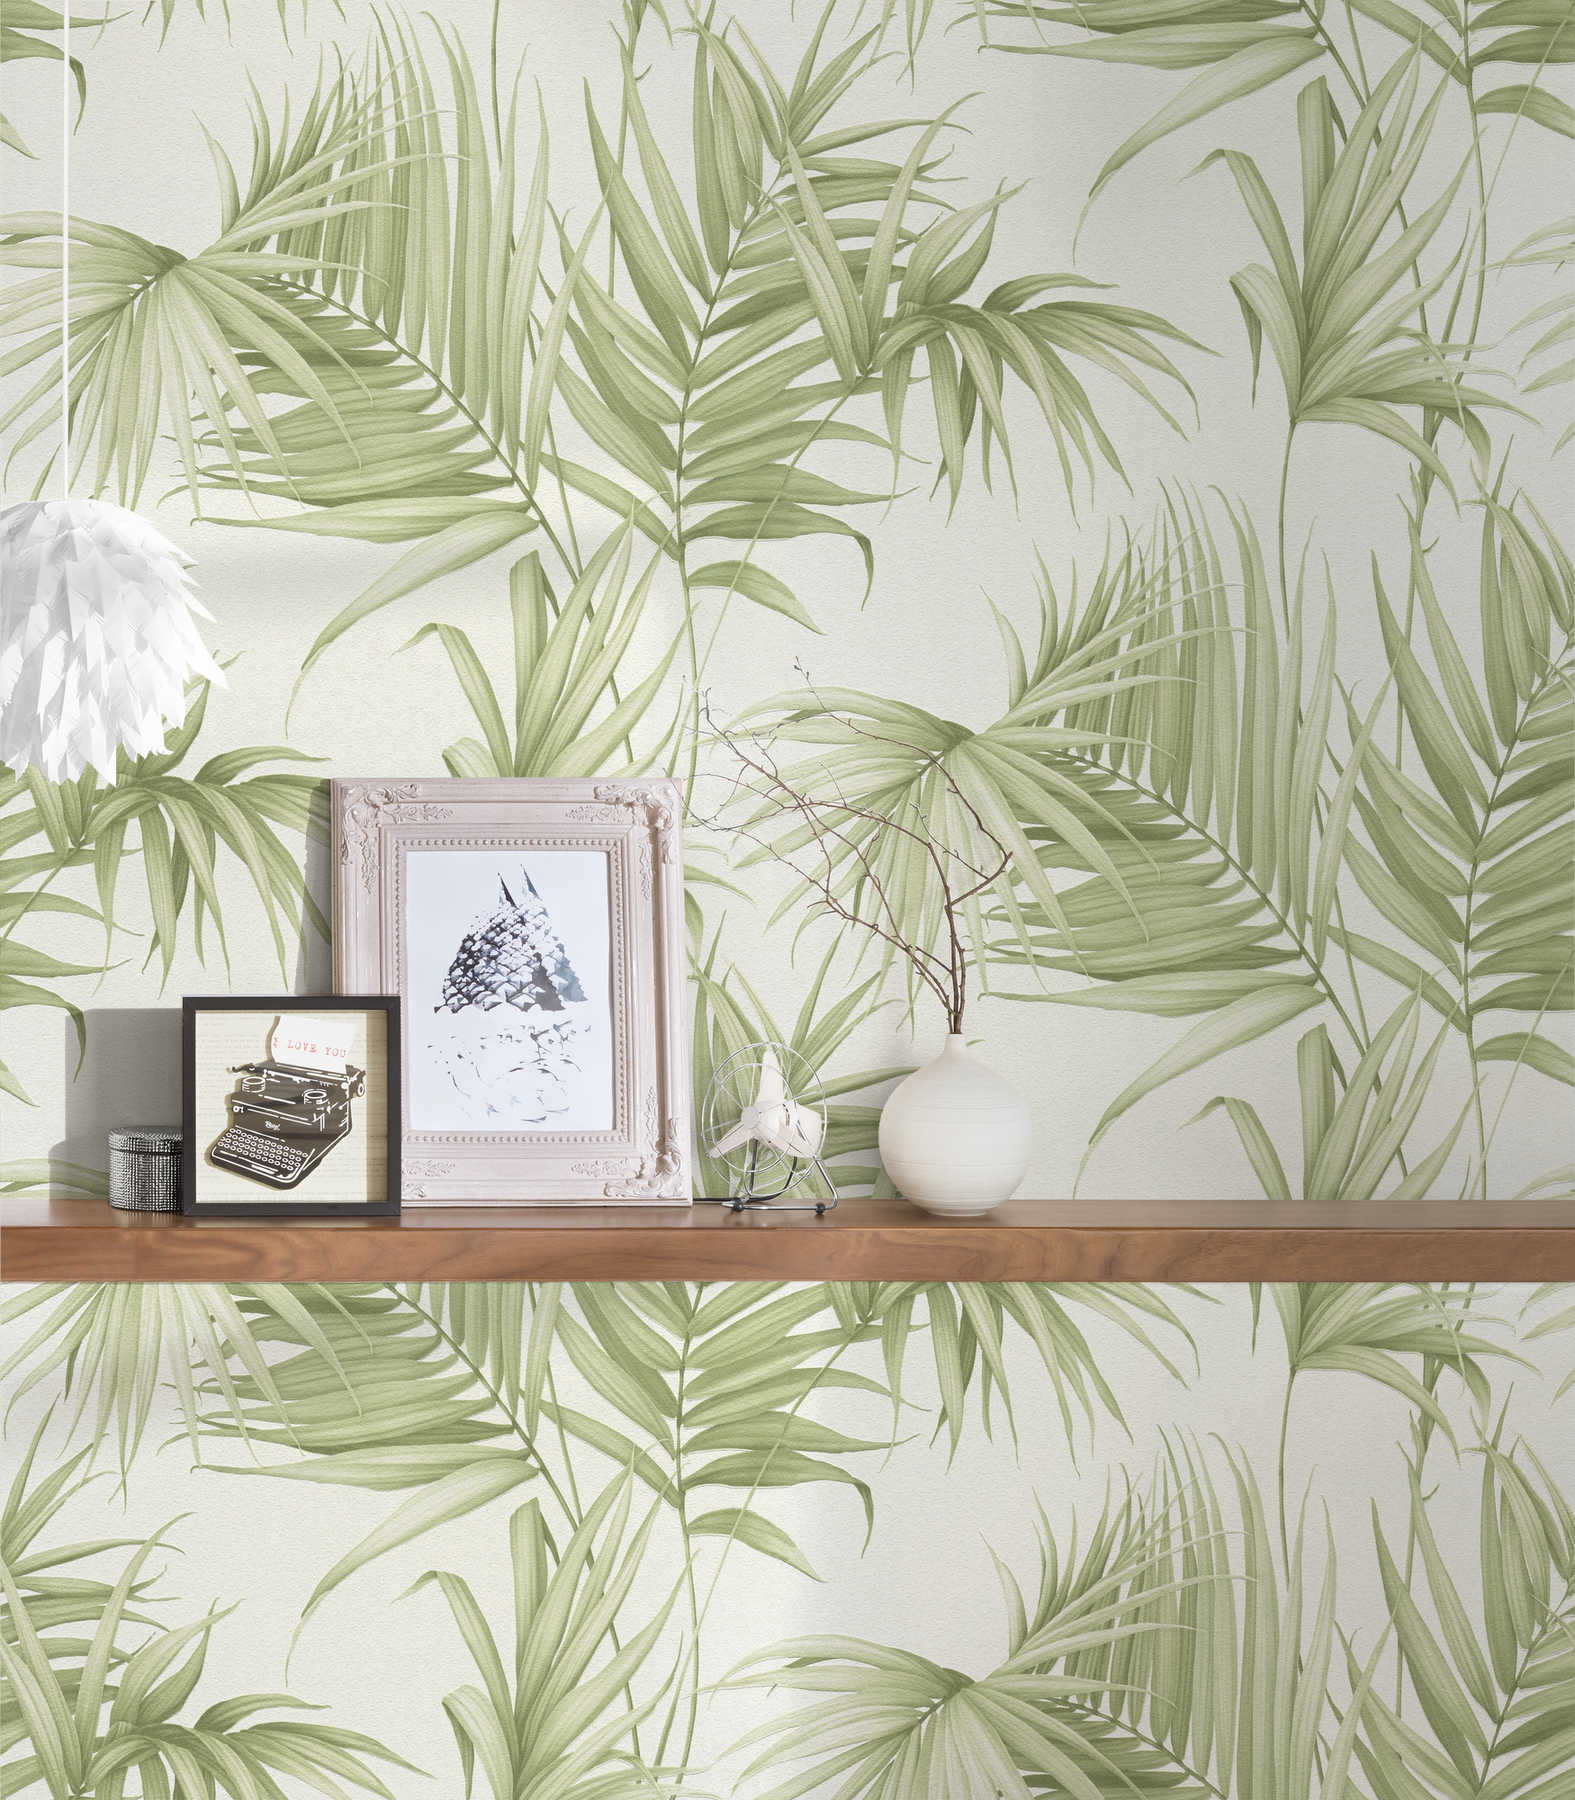             Blätter Tapete mit exotischen Farnblättern – Grün, Weiß
        